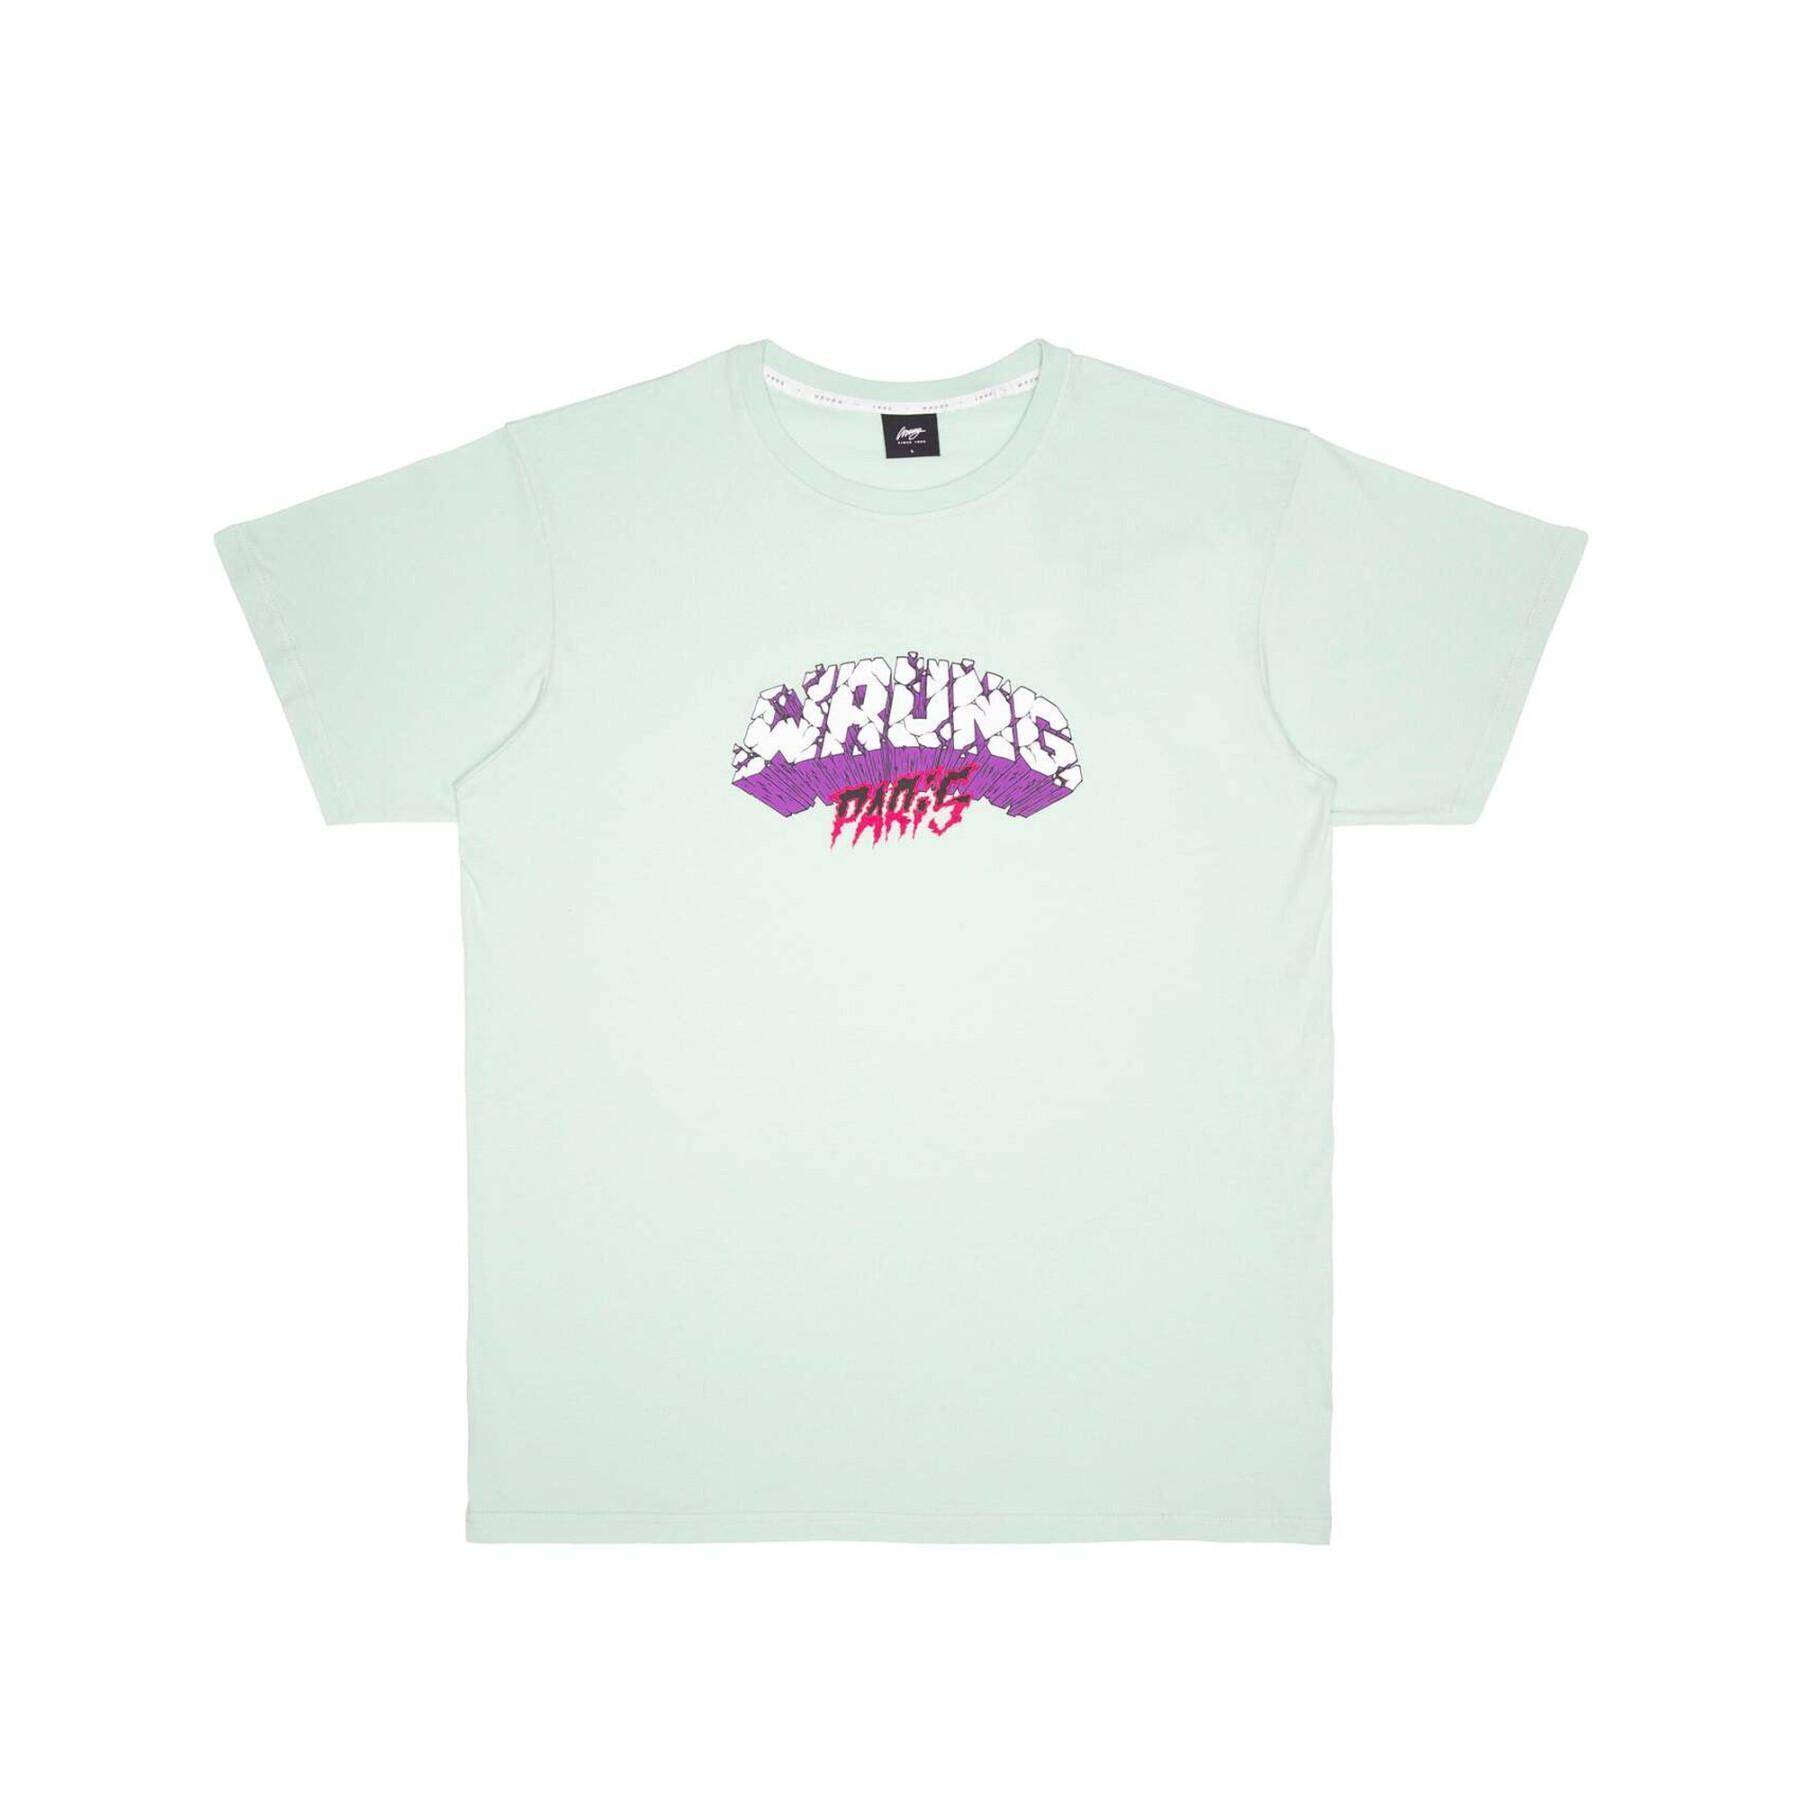 T-shirt Wrung Shone